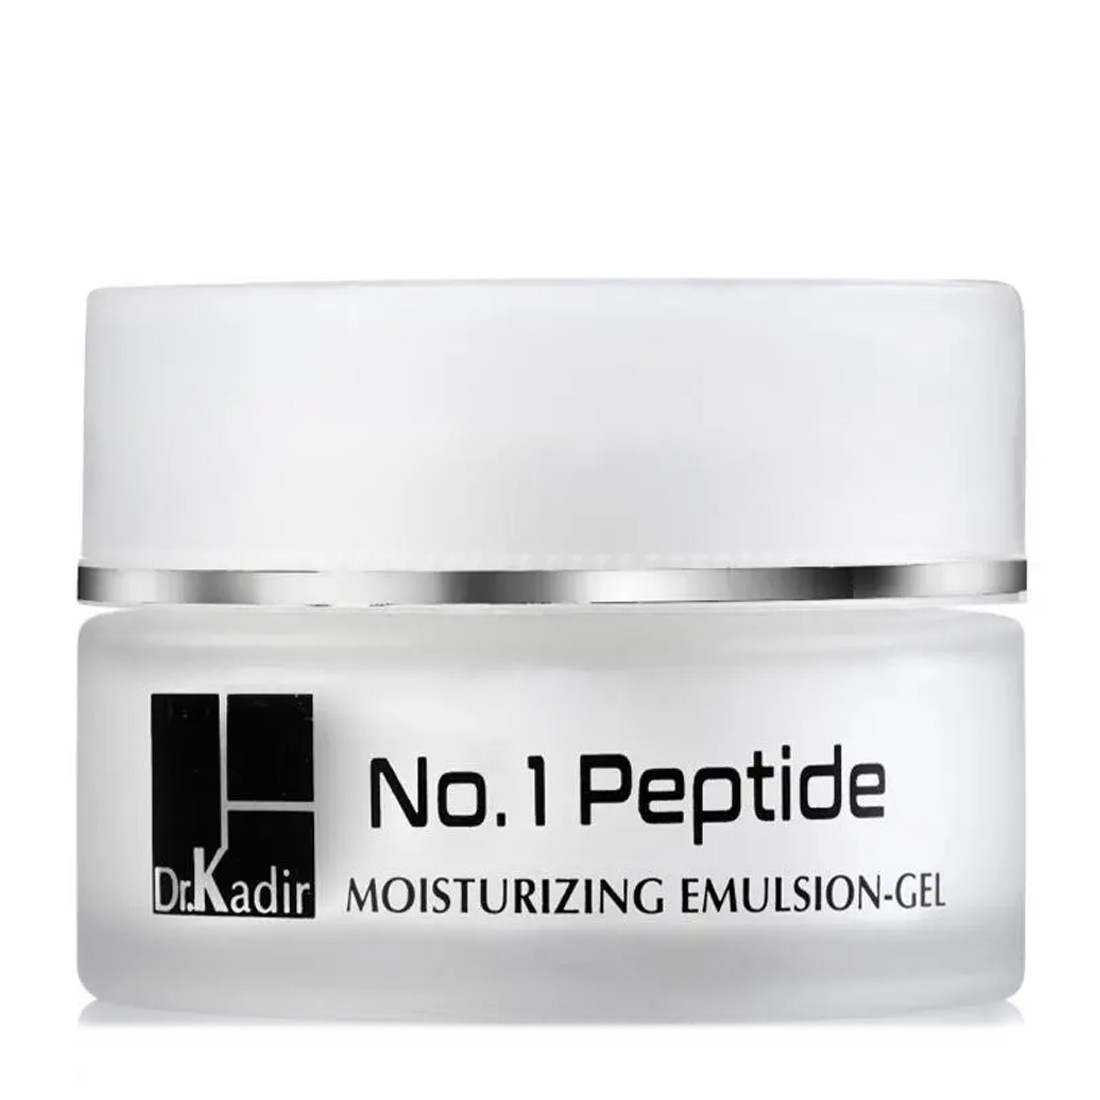 Пептидная увлажняющая эмульсия Dr. Kadir No.1 Peptide Moisturizing Emulsion-Gel